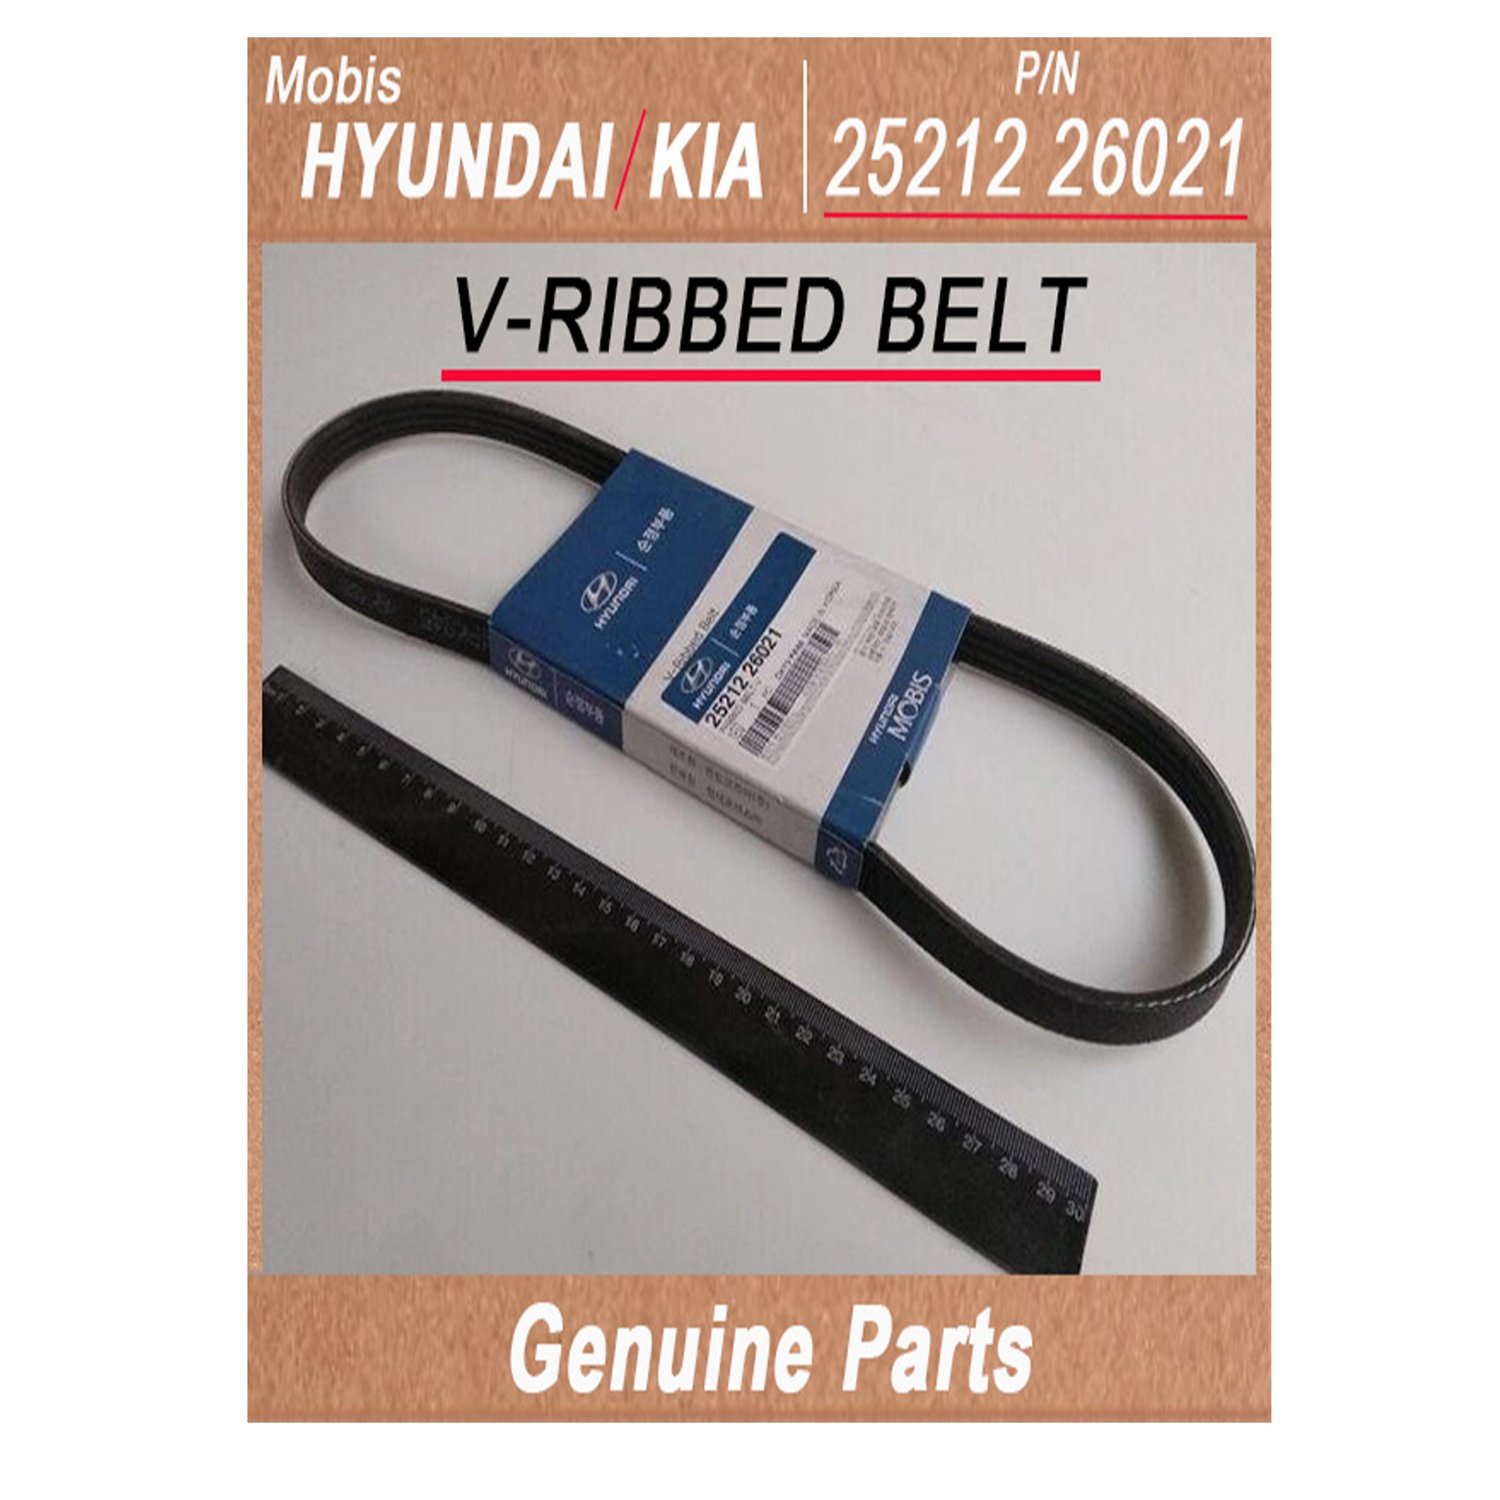 2521226021 _ V_RIBBED BELT _ Genuine Korean Automotive Spare Parts _ Hyundai Kia _Mobis_